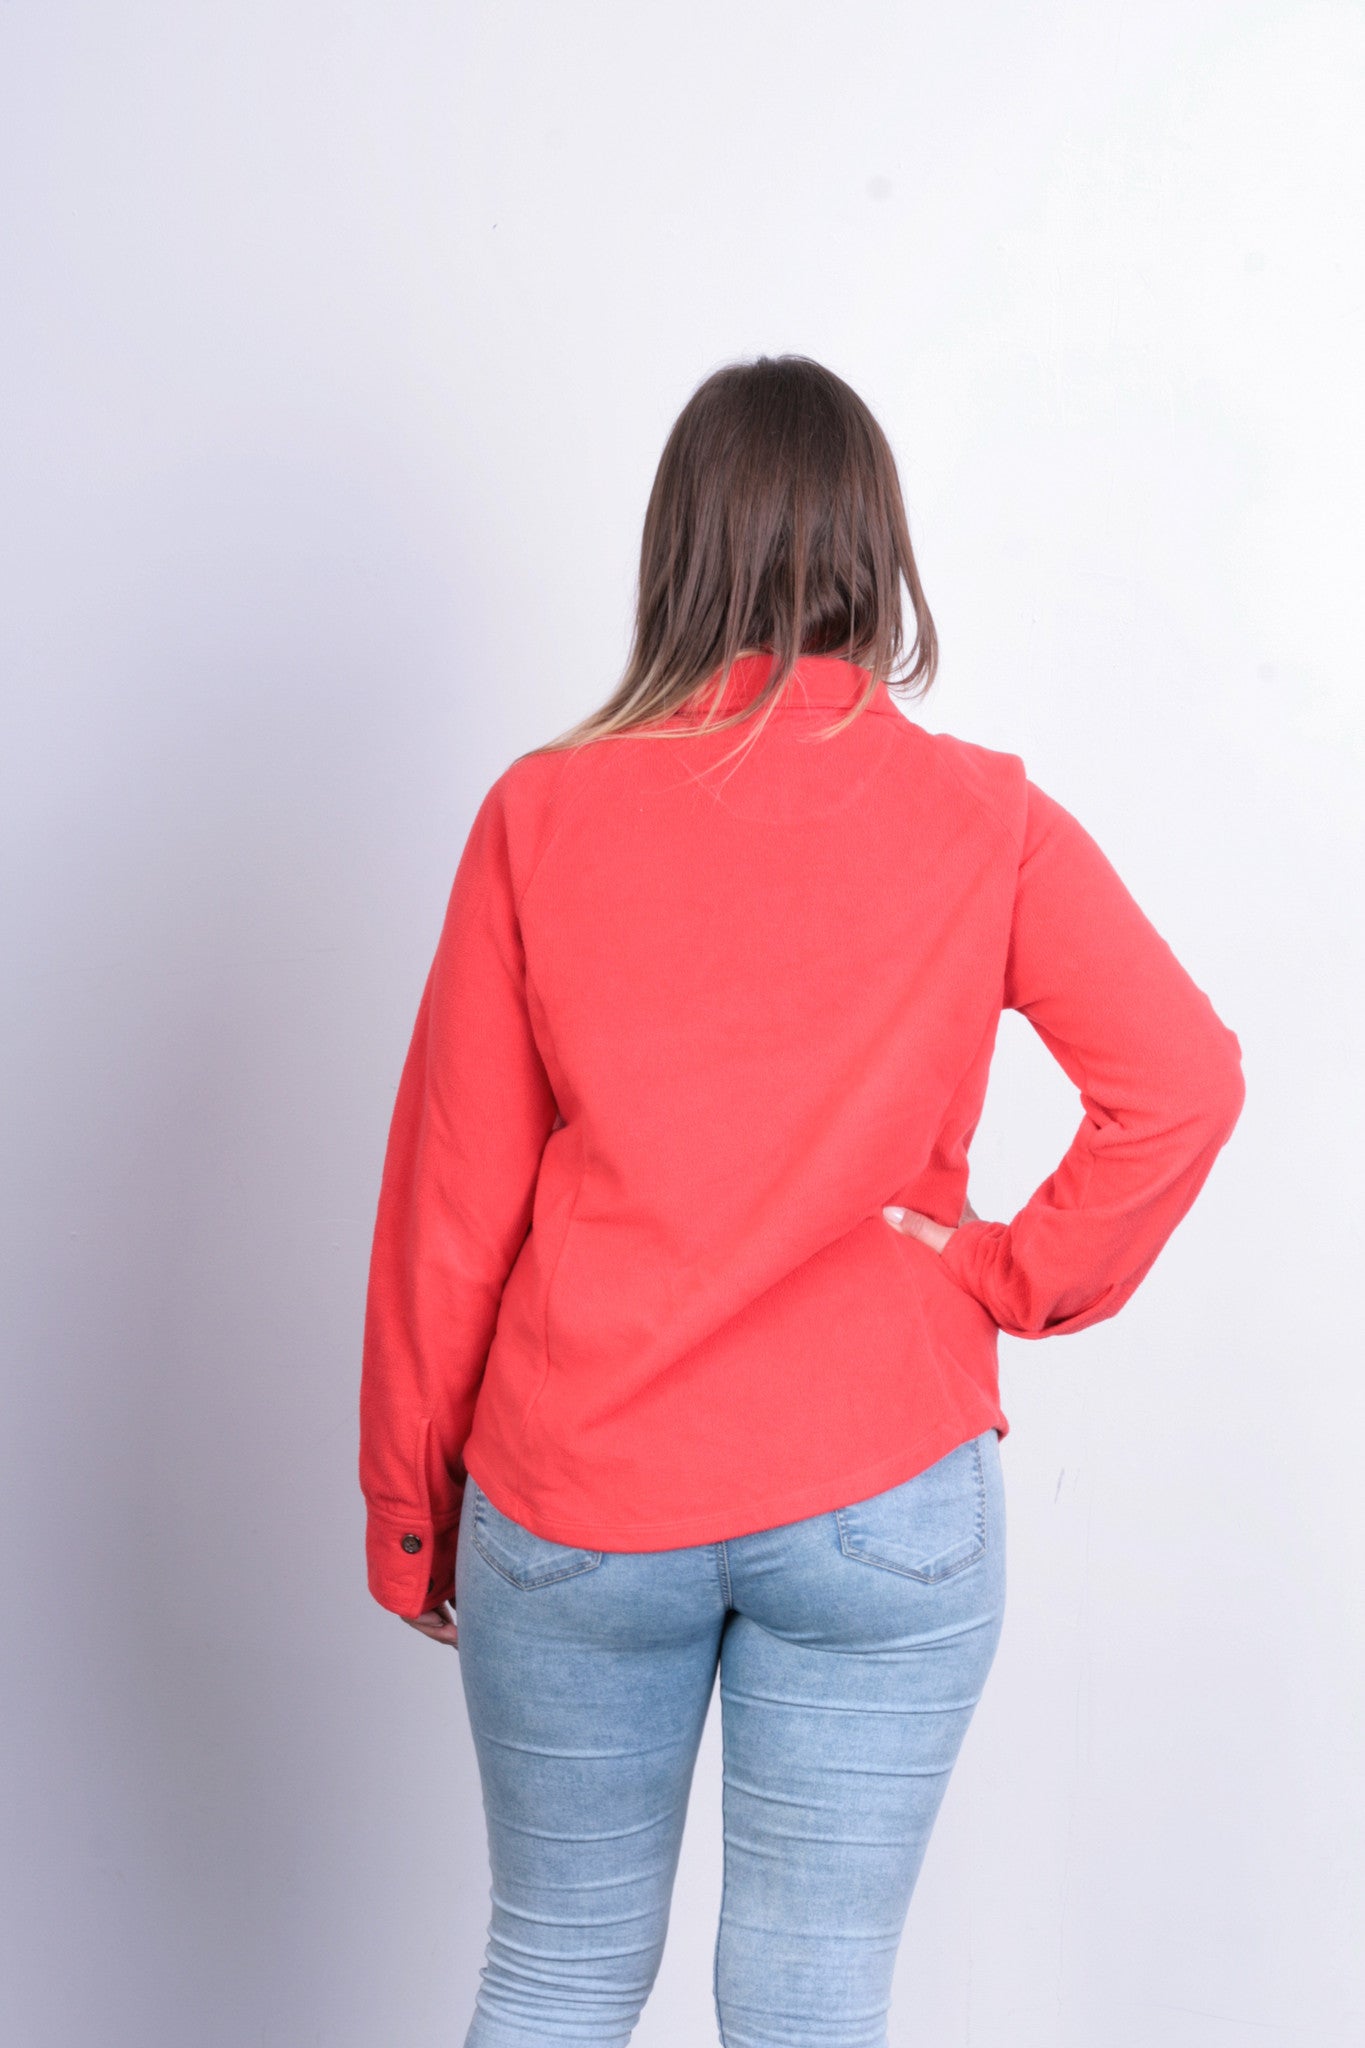 Lands'End Womens M Fleece Jacket Orange Buttons Down - RetrospectClothes